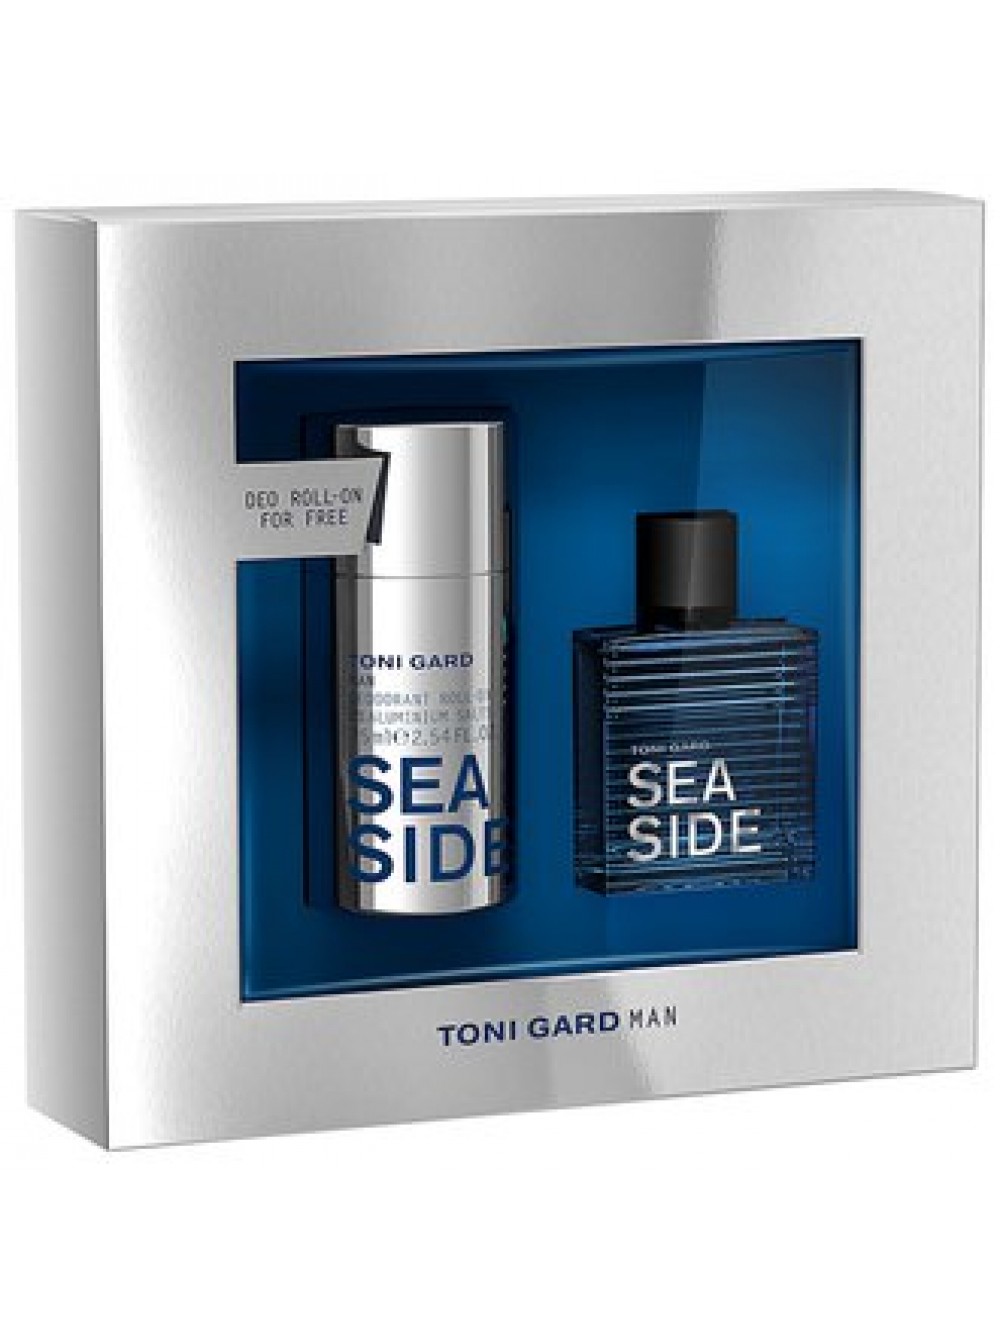 цене Intense Купить мл) набор 30 в вода + лучшей дезодорант Sea Gard (туалетная 75 по парфюмерии Подарочный интернет-магазине Side мл Toni роликовый